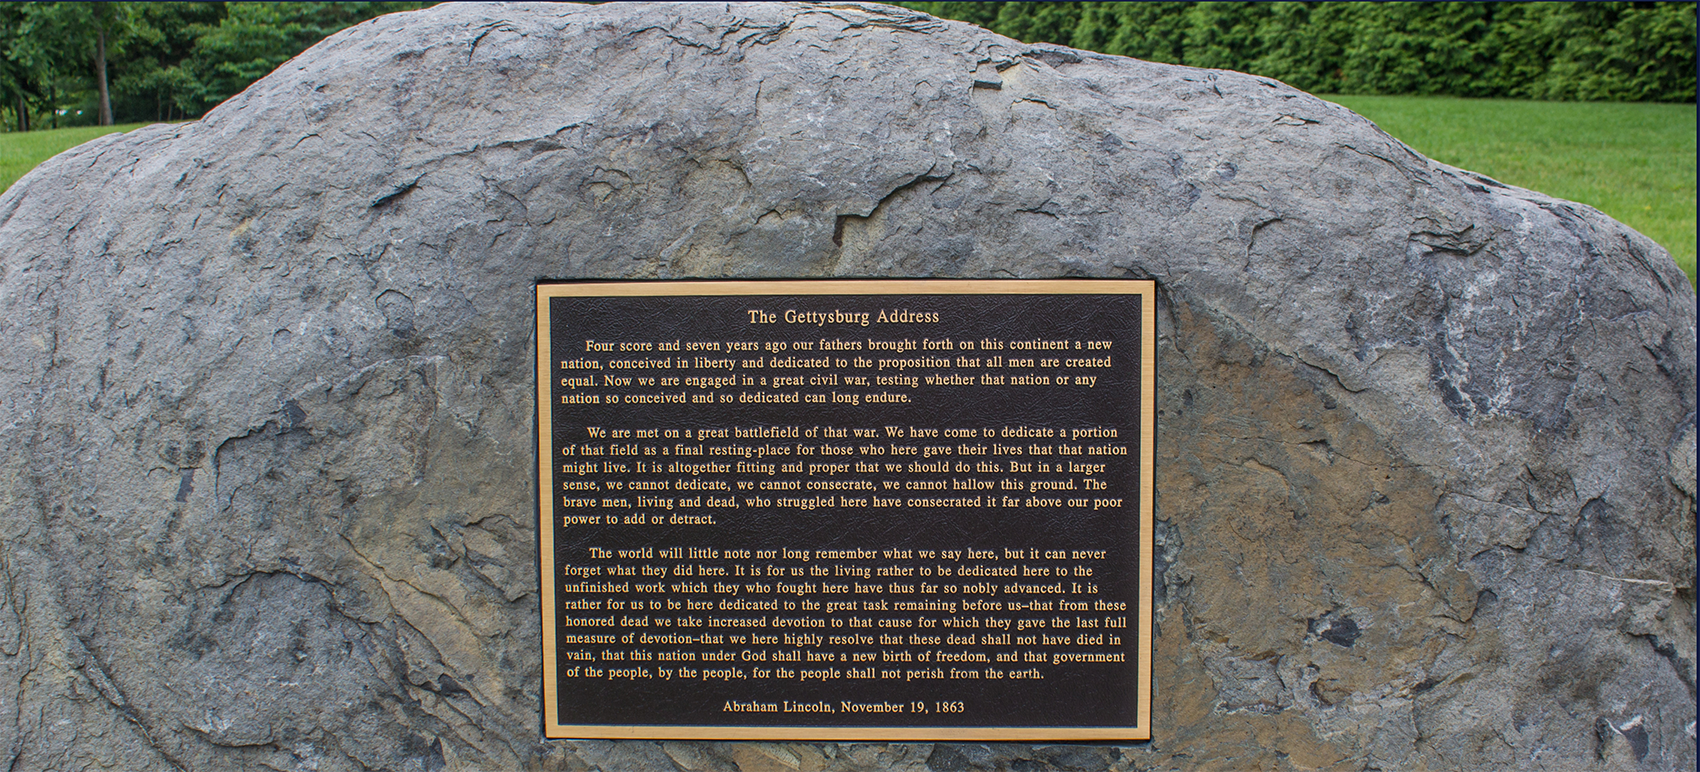 Gettysburg Address on boulder at Gettysburg field